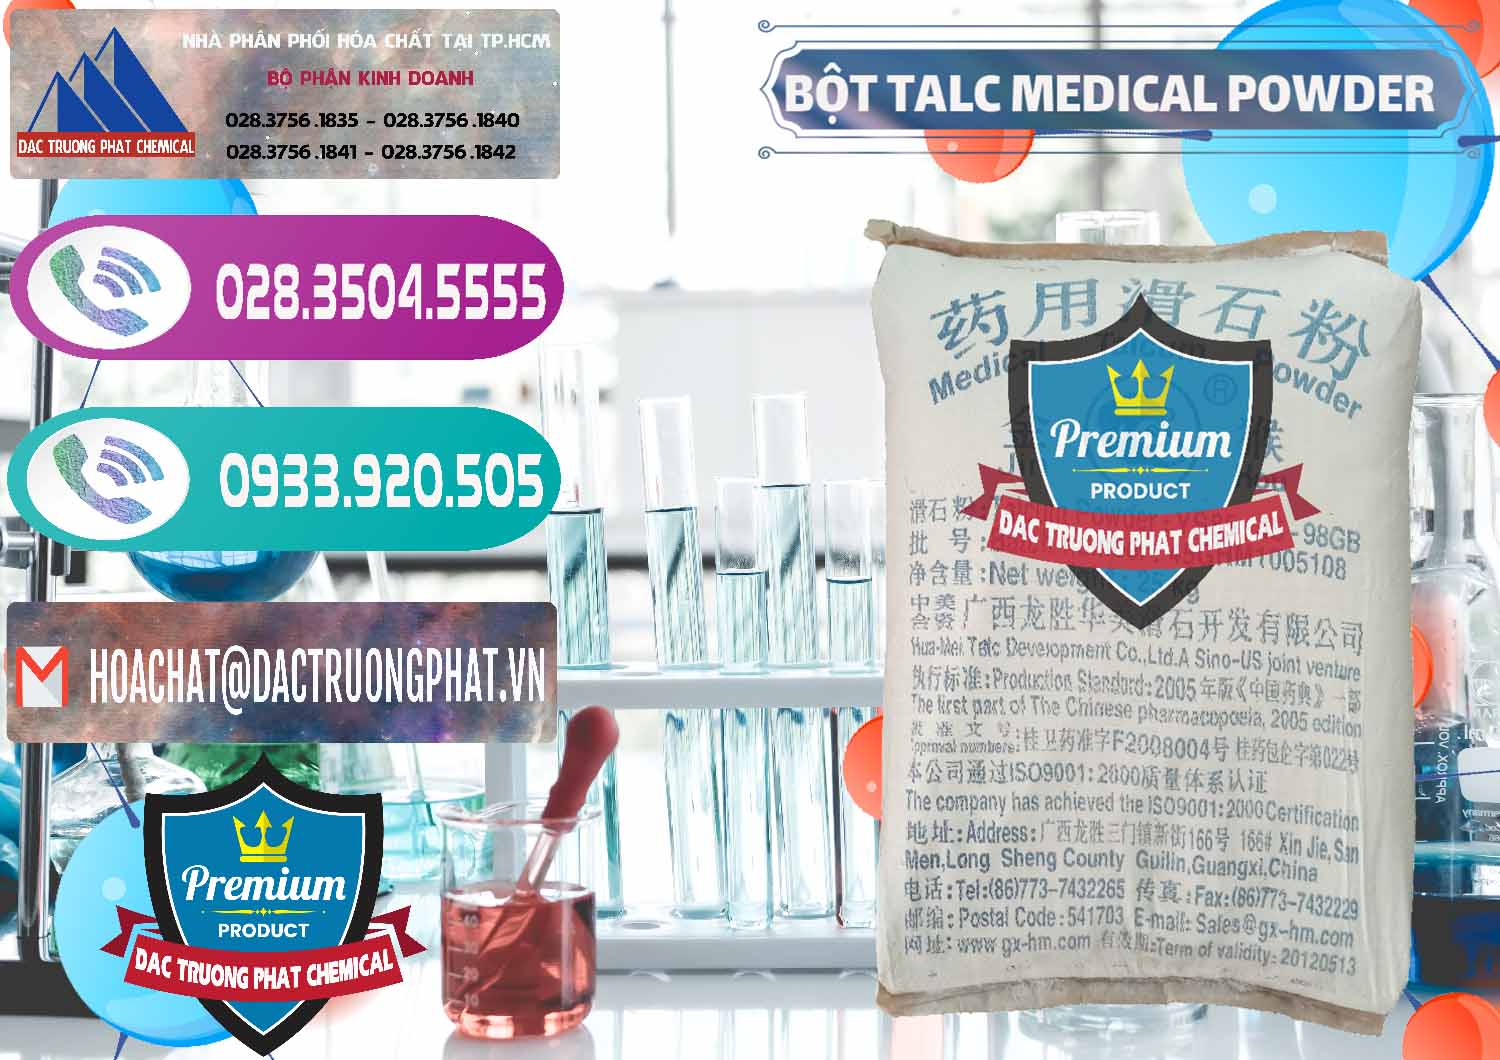 Cty bán - cung cấp Bột Talc Medical Powder Trung Quốc China - 0036 - Nơi chuyên bán - cung cấp hóa chất tại TP.HCM - hoachatxulynuoc.com